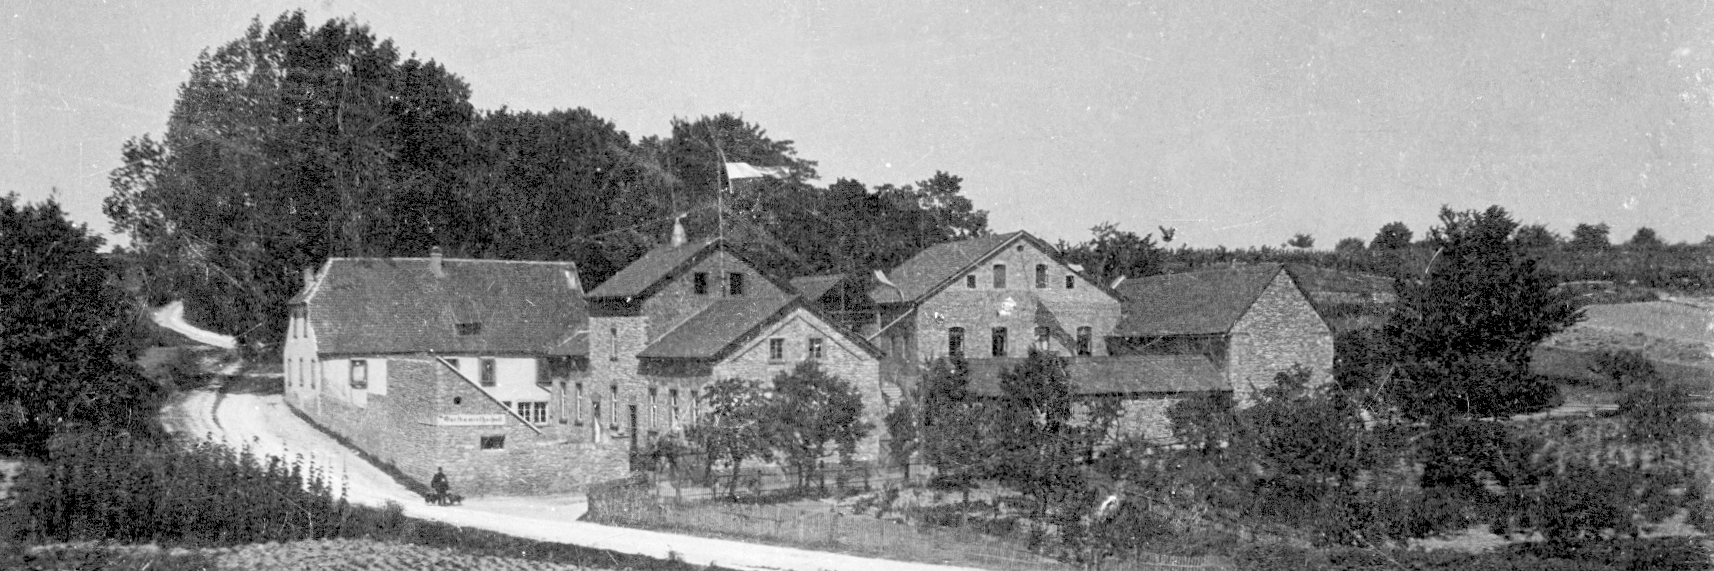 Die Brauerei Königsborn um 1898